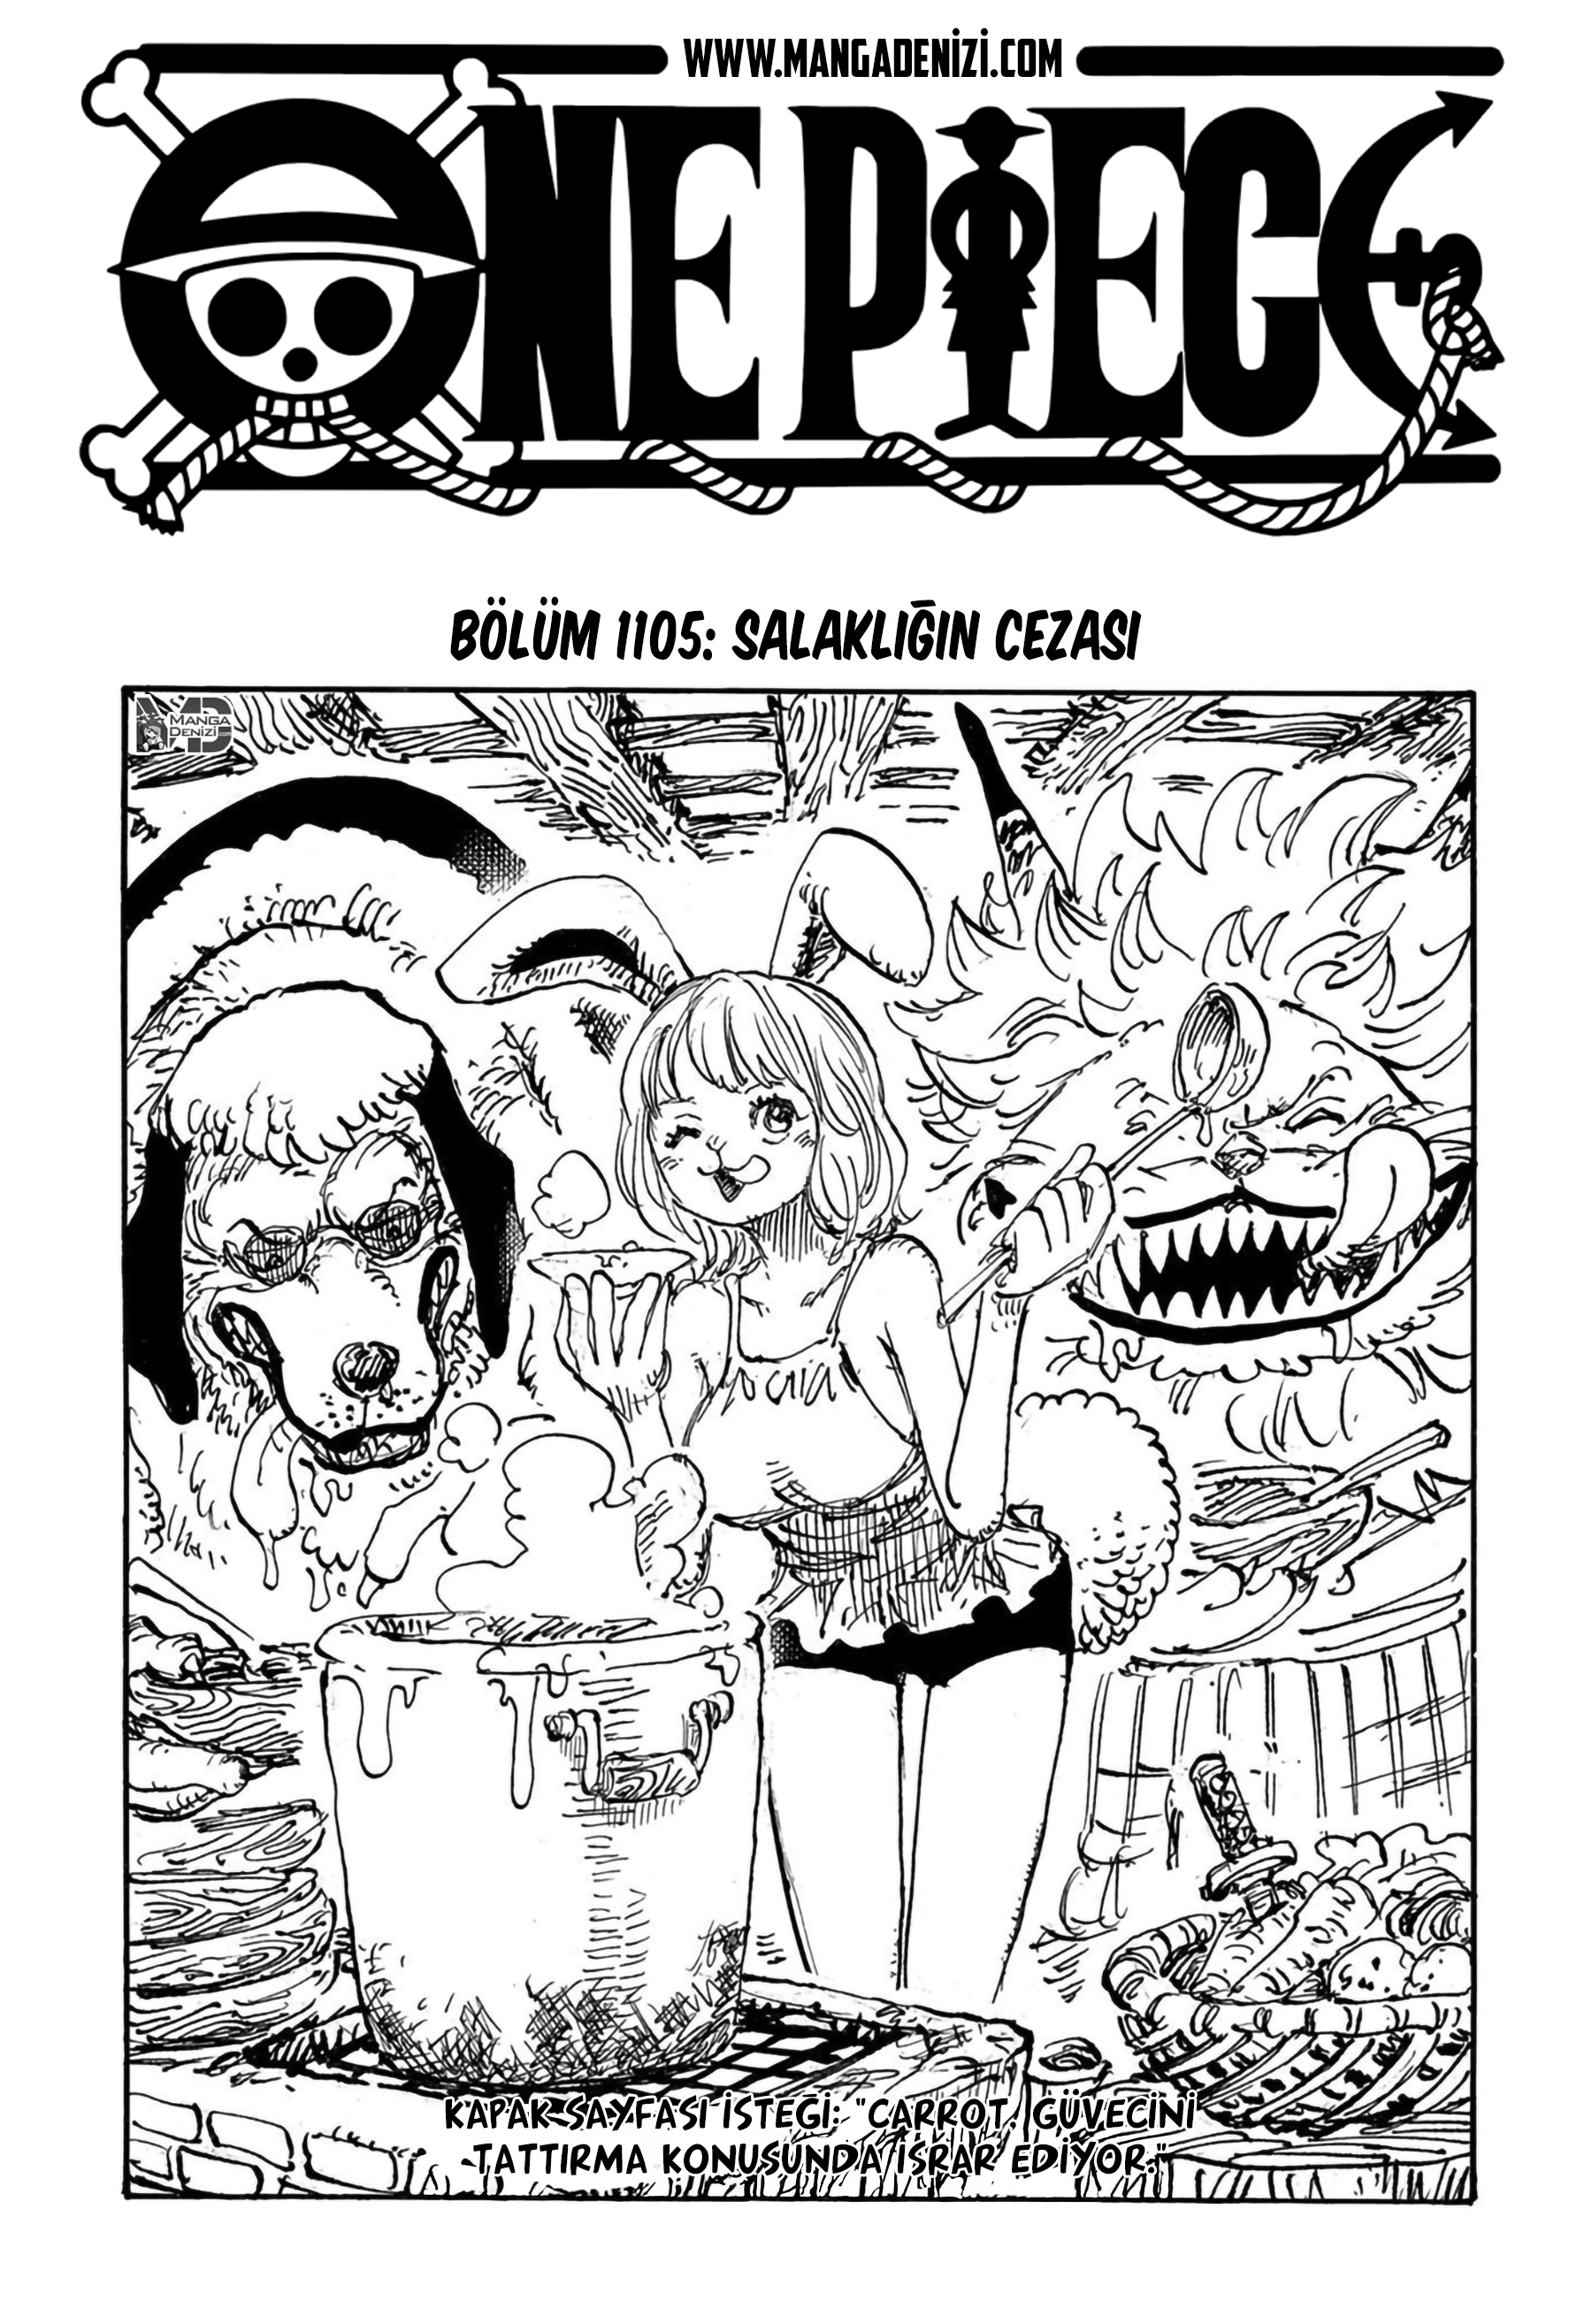 One Piece mangasının 1105 bölümünün 2. sayfasını okuyorsunuz.